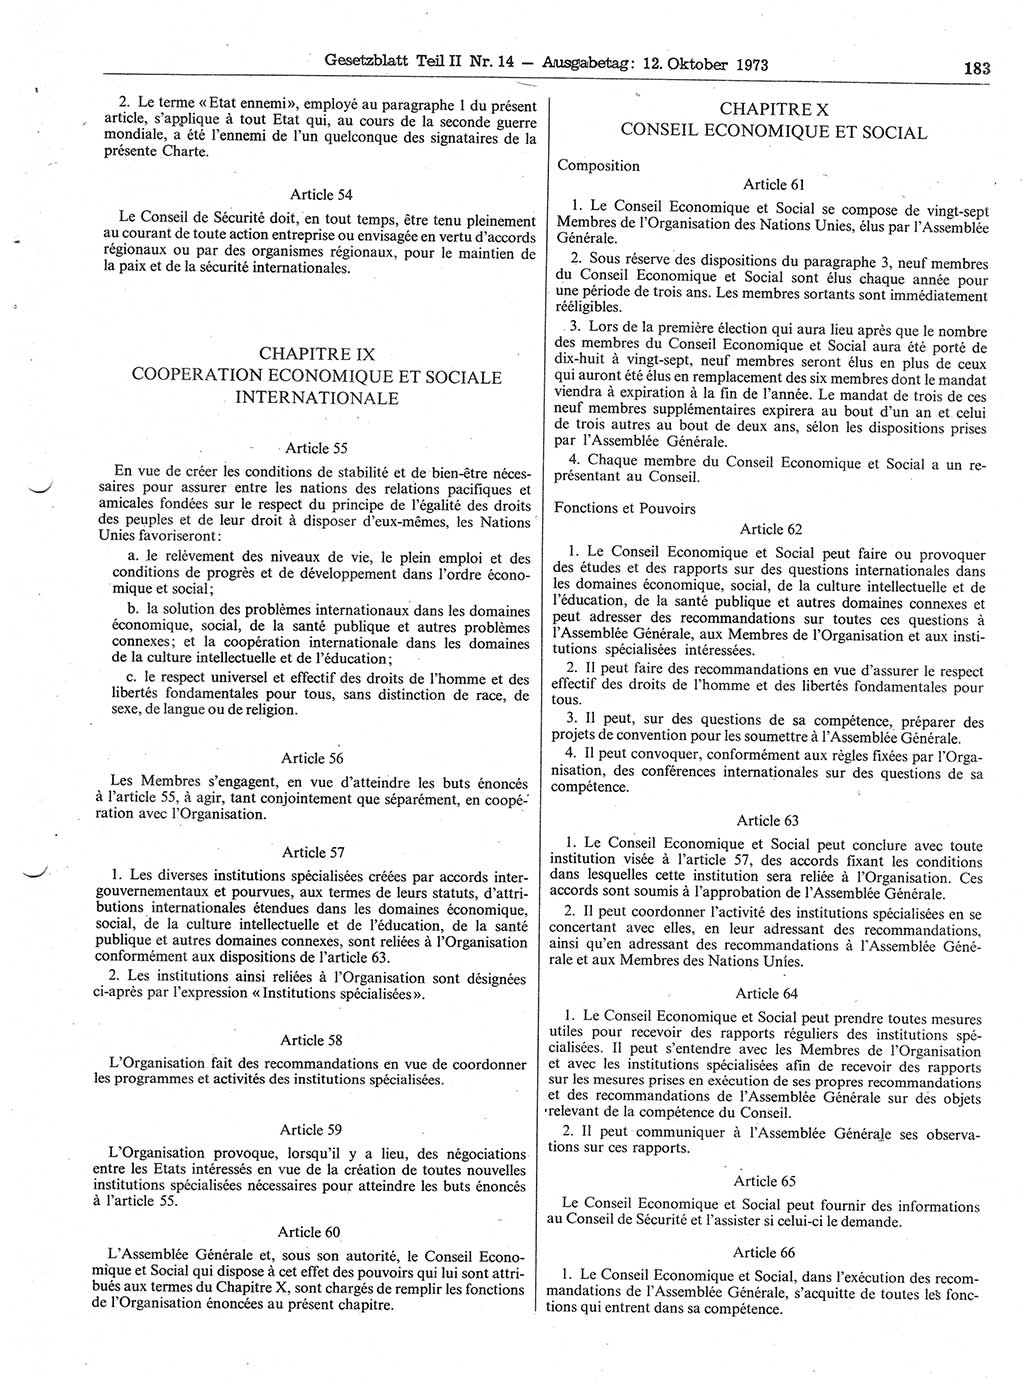 Gesetzblatt (GBl.) der Deutschen Demokratischen Republik (DDR) Teil ⅠⅠ 1973, Seite 183 (GBl. DDR ⅠⅠ 1973, S. 183)